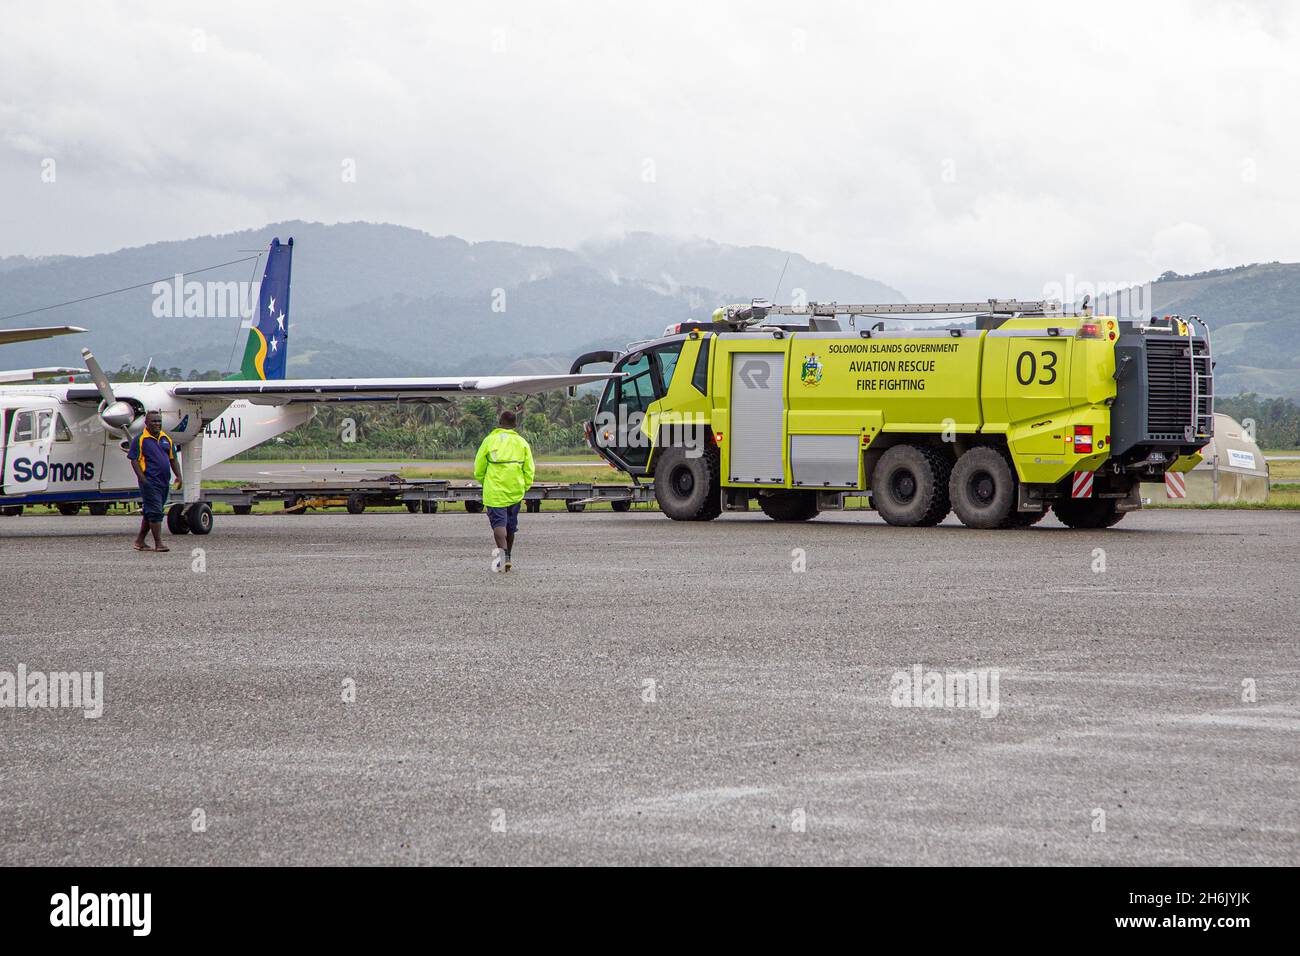 HONIARA, Isole SALOMONE - 30 dicembre 2015: Solomon Islands Aviation Rescue Fire Fighting Truck sulla pista dell'Aeroporto Internazionale di Honiara. Foto Stock